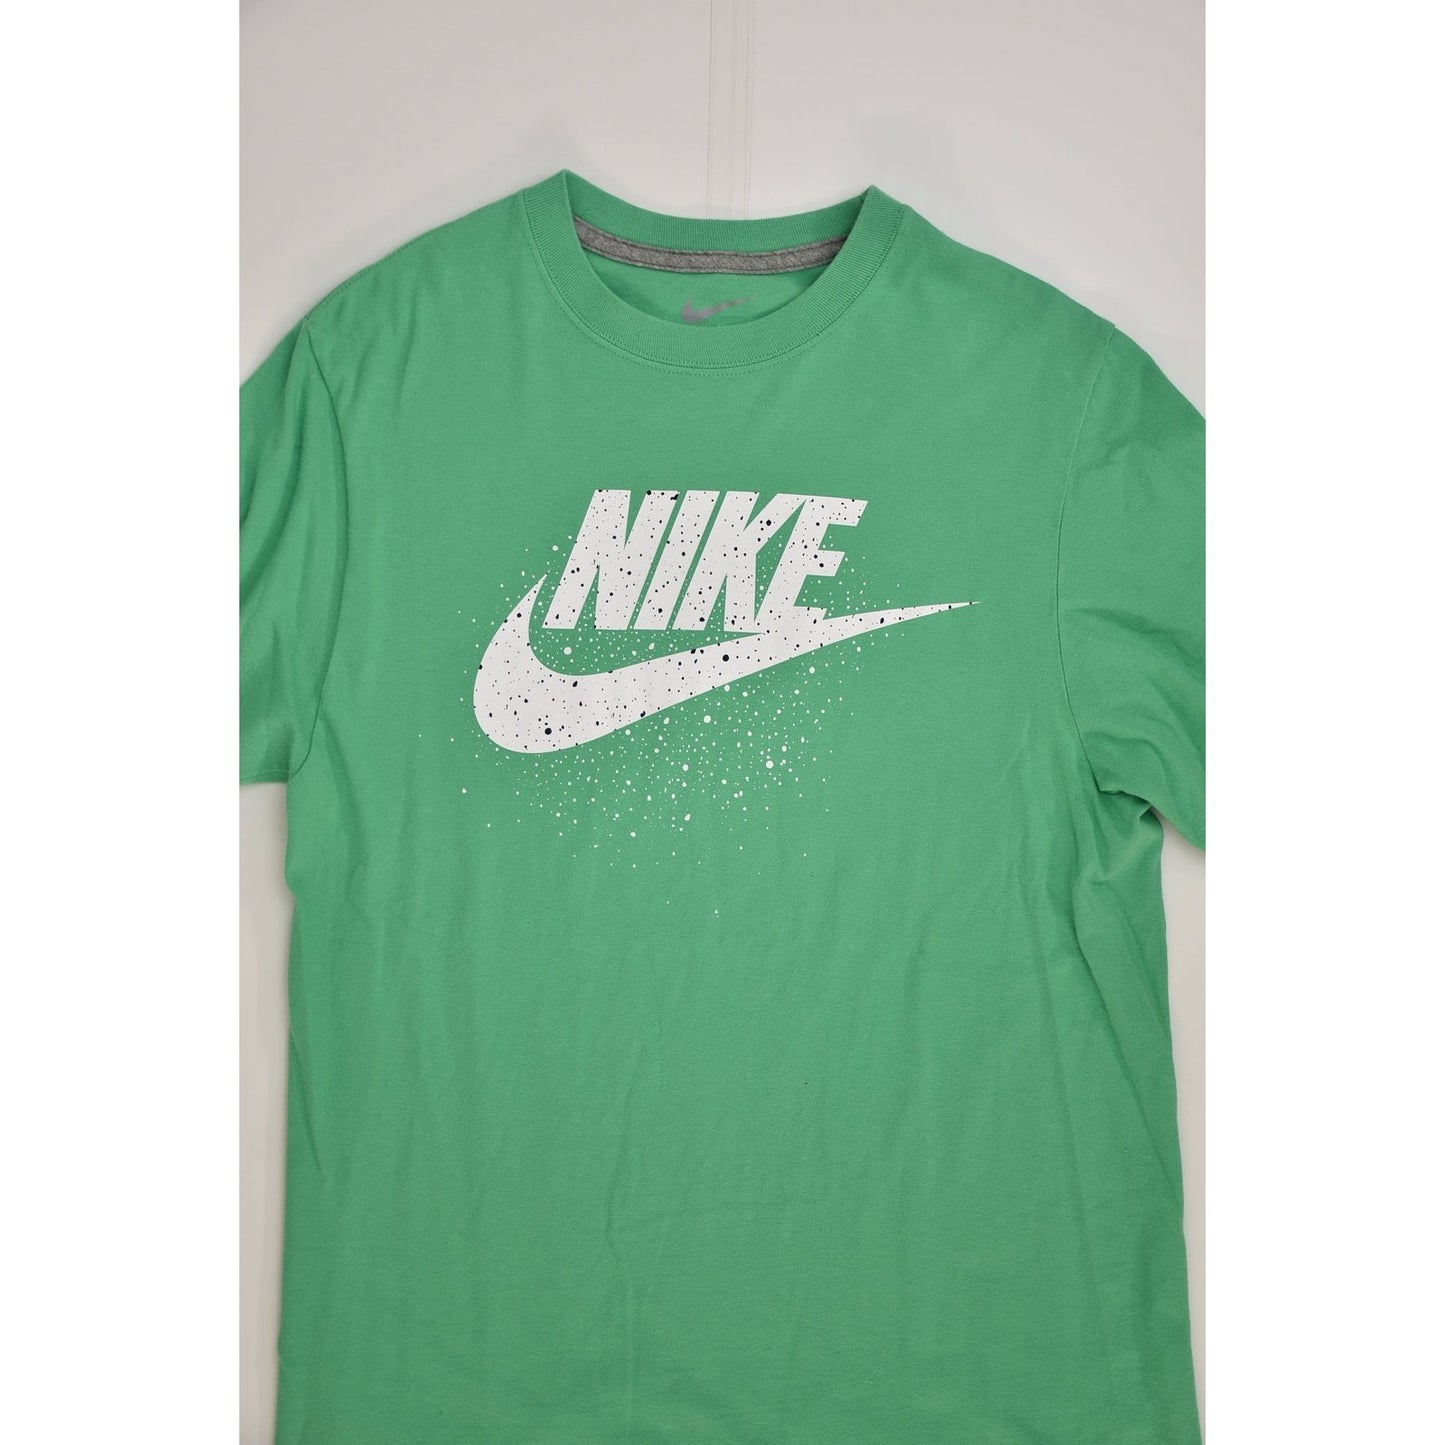 Nike Green T-shirt (S)